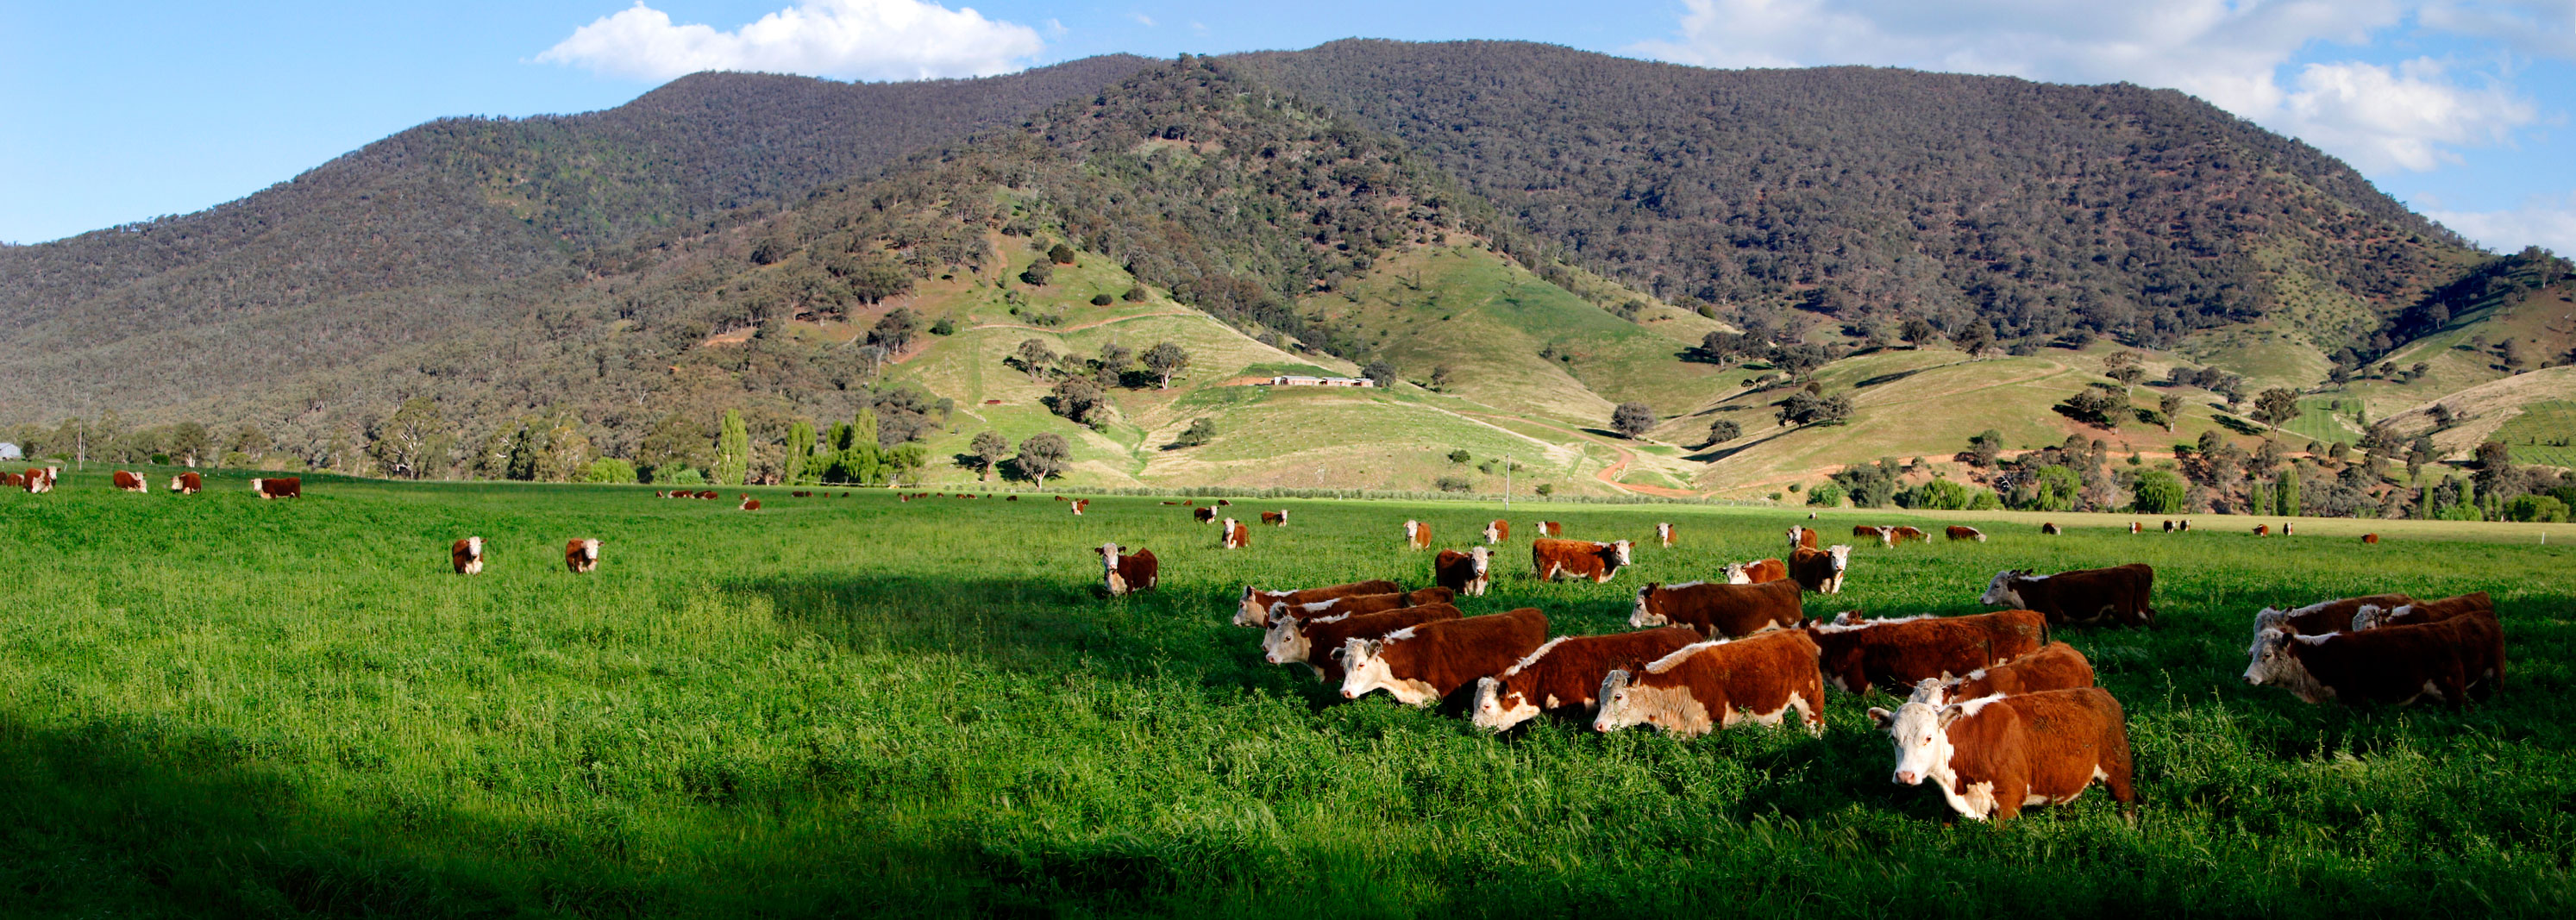 Cows_in_green_field_-_nullamunjie_olive_grove.jpg